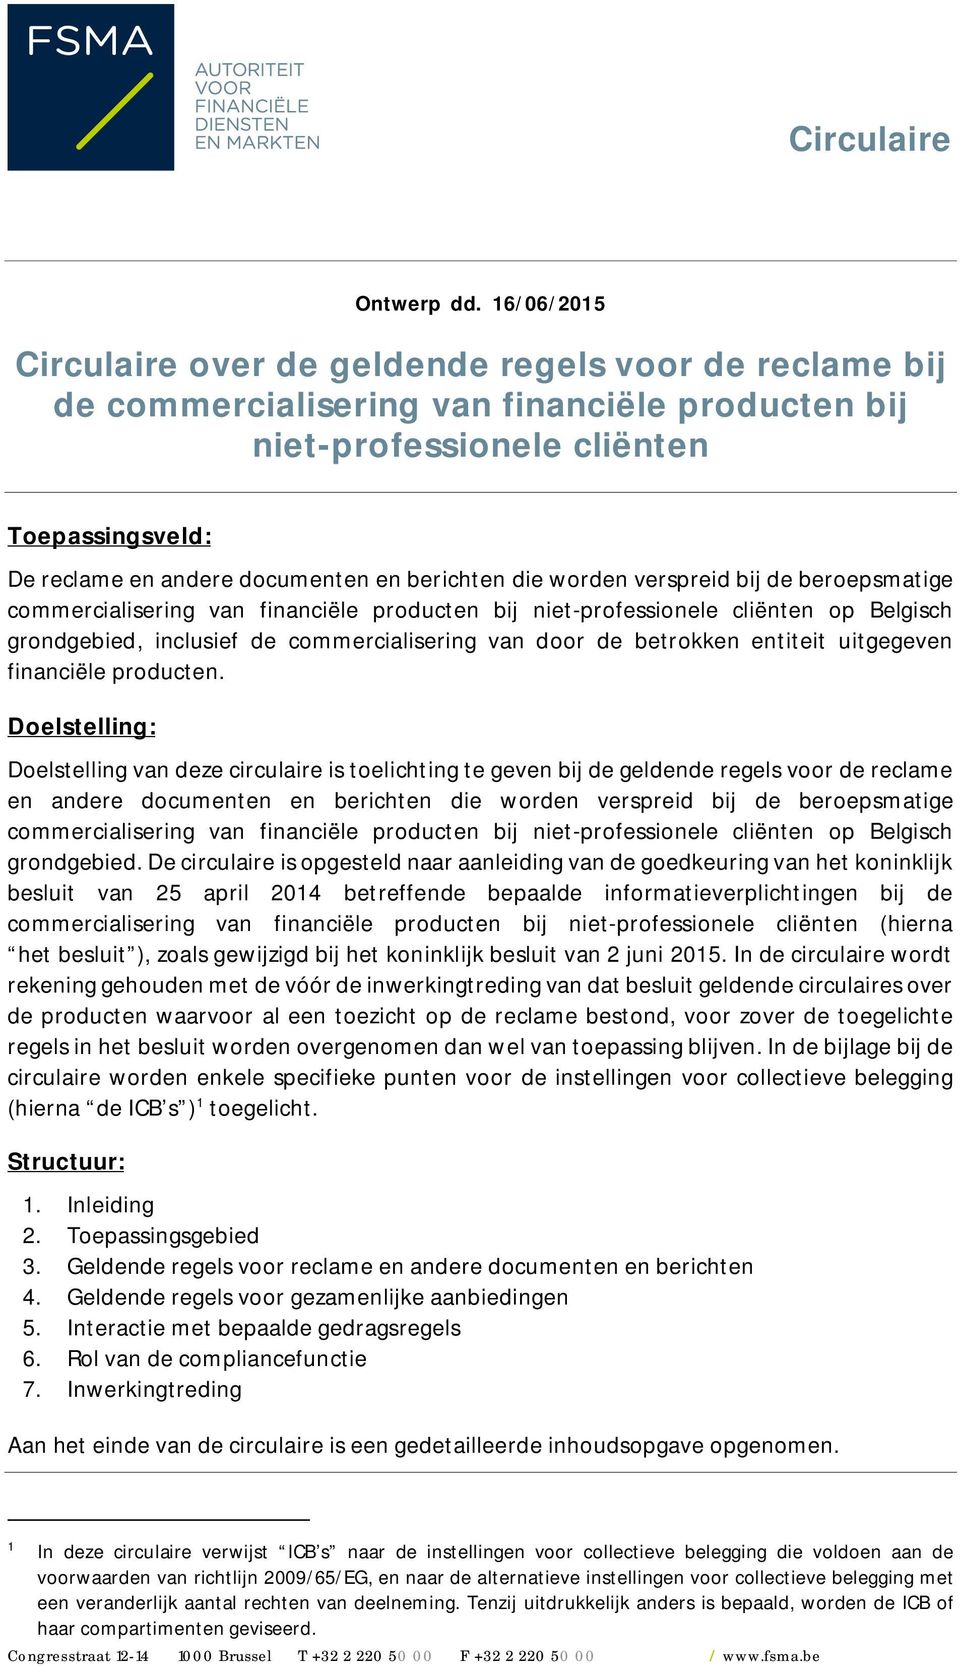 berichten die worden verspreid bij de beroepsmatige commercialisering van financiële producten bij niet-professionele cliënten op Belgisch grondgebied, inclusief de commercialisering van door de